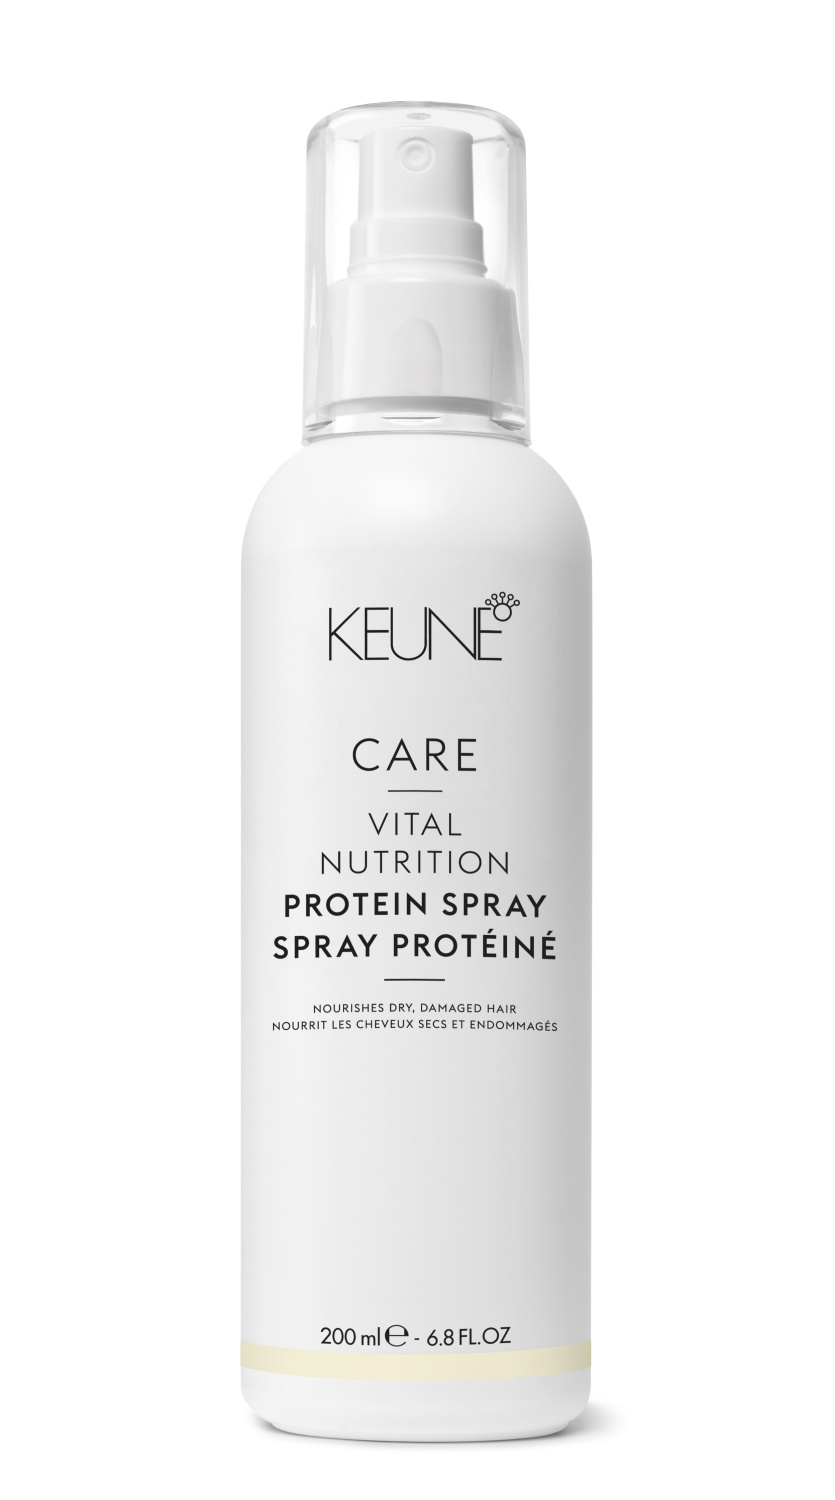 KEUNE Care Vital Nutrition Protein Spray 200ml - интернет-магазин профессиональной косметики Spadream, изображение 49489